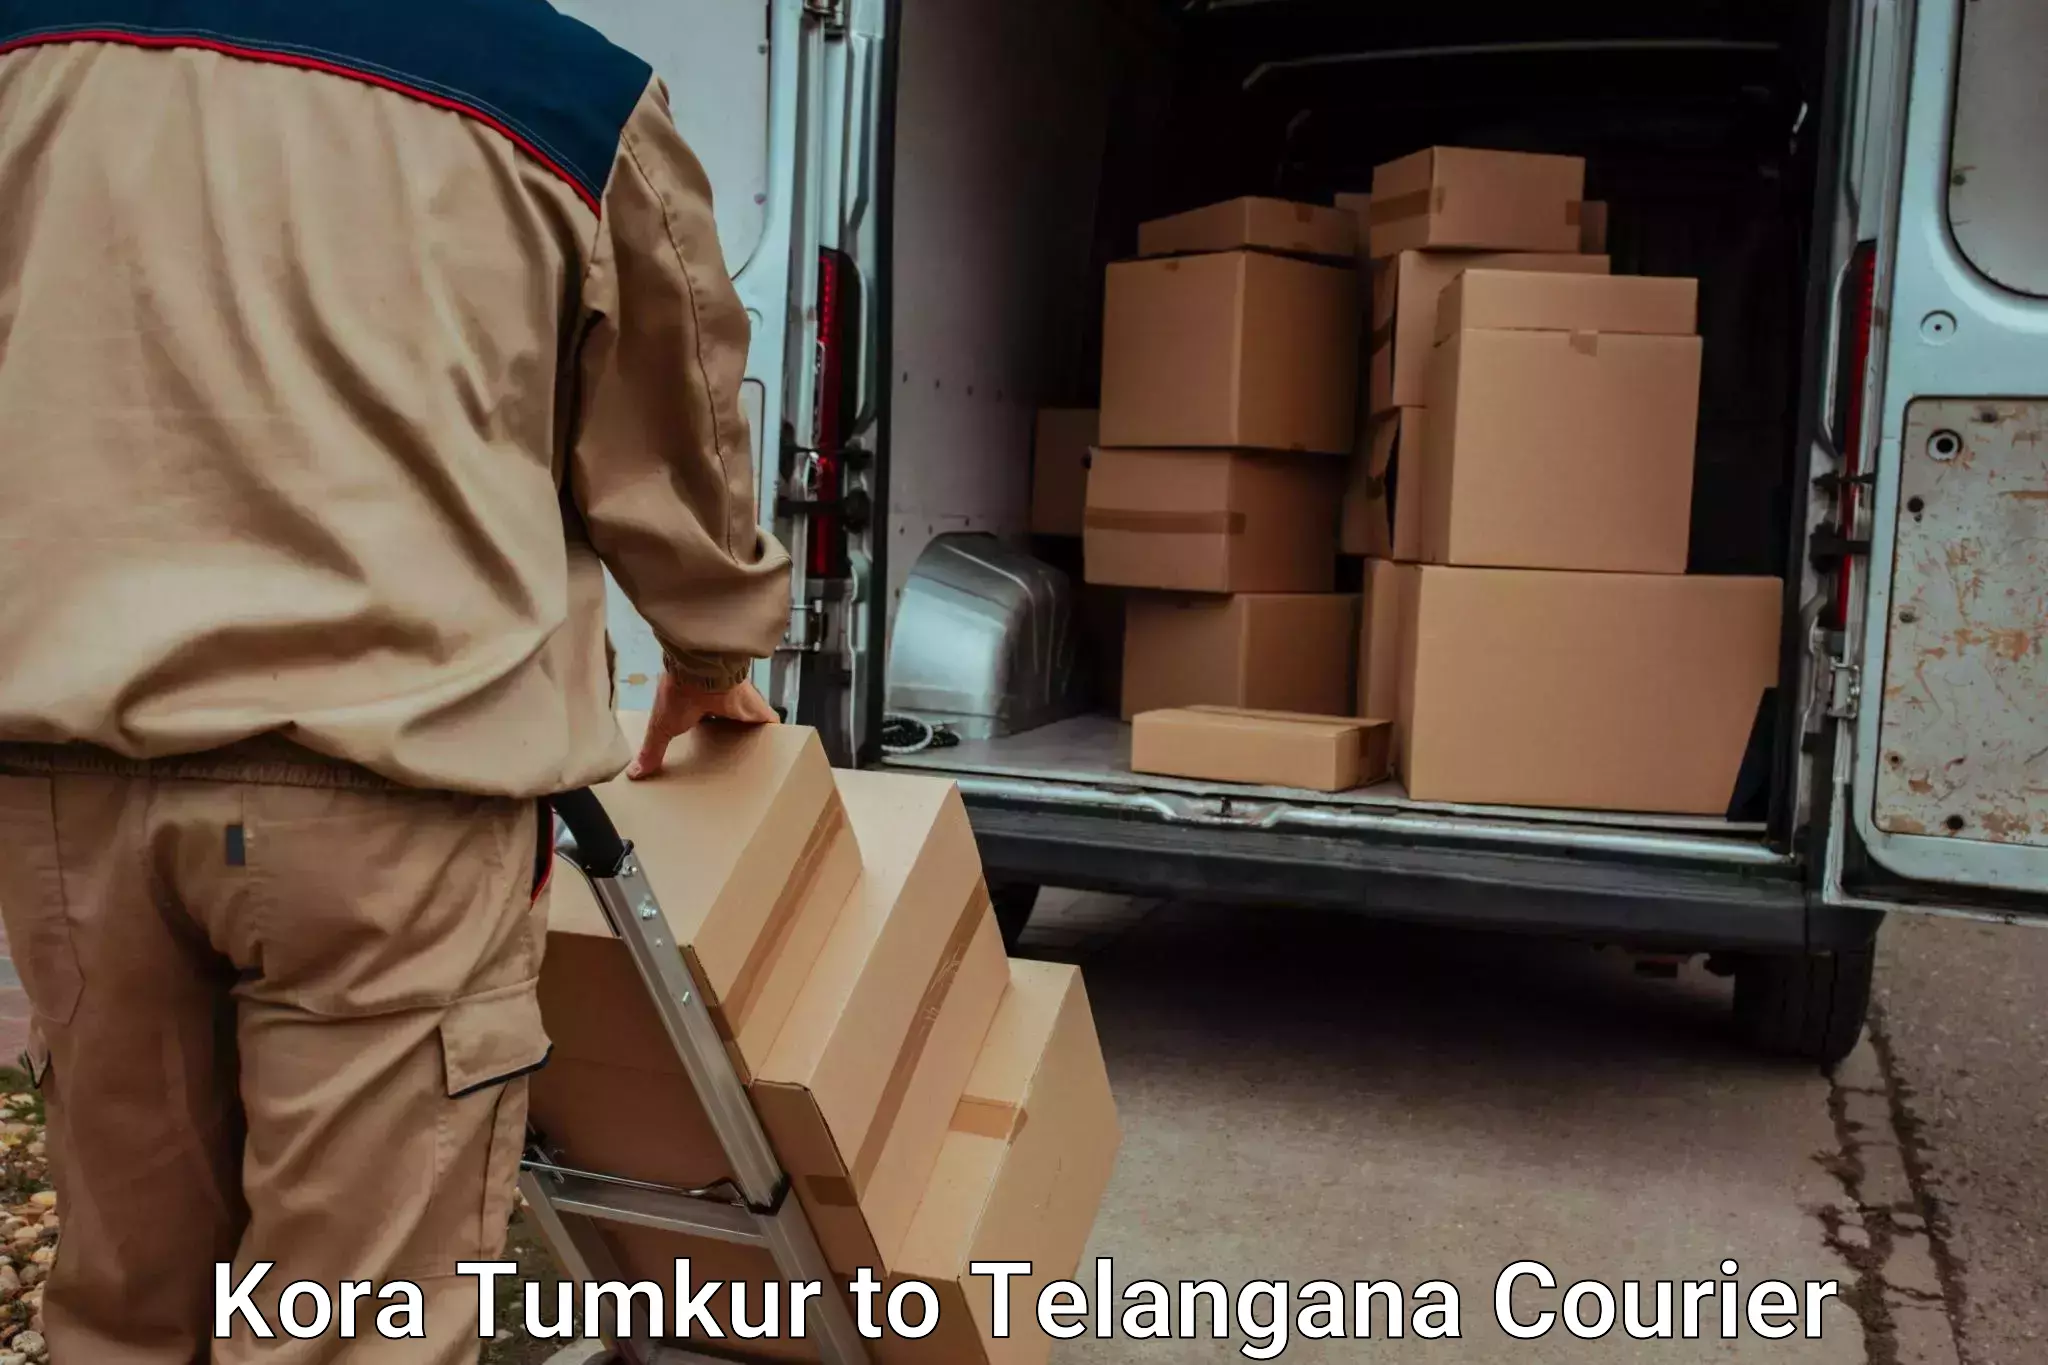 Luggage transport service Kora Tumkur to Mahabubabad